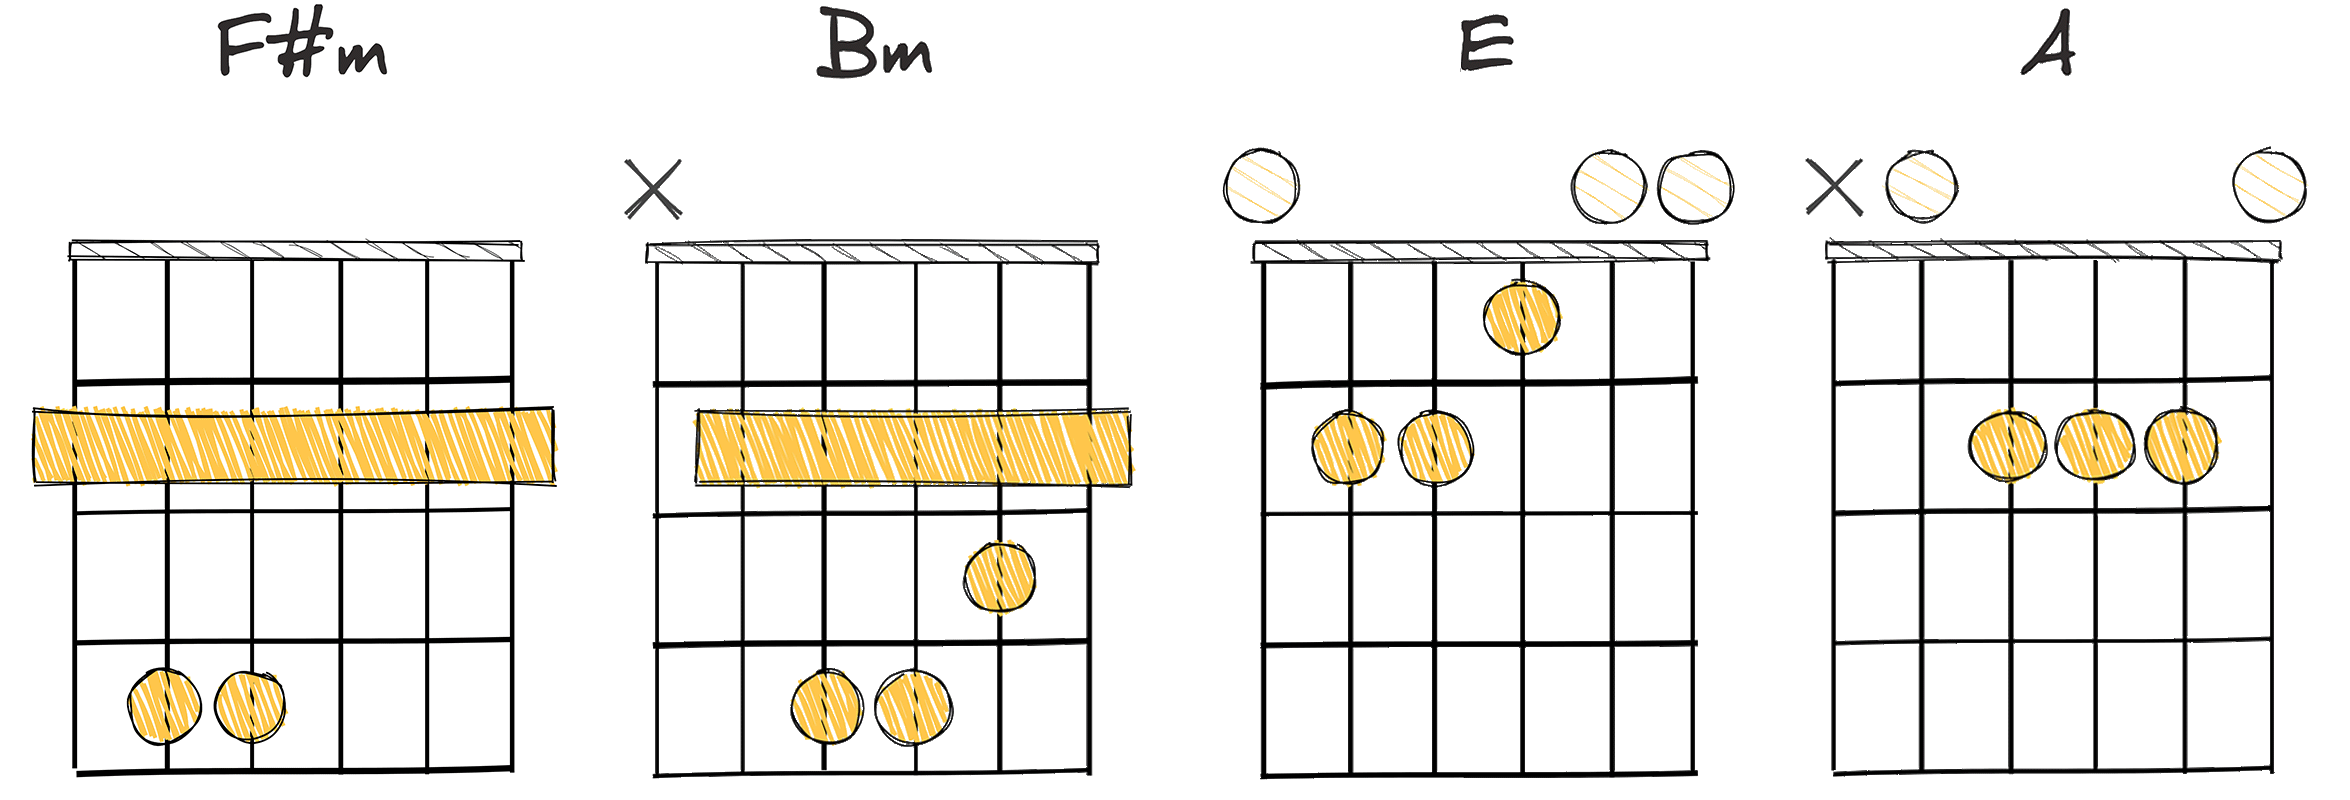 vi-ii-V-I (6-2-5-1) chords diagram